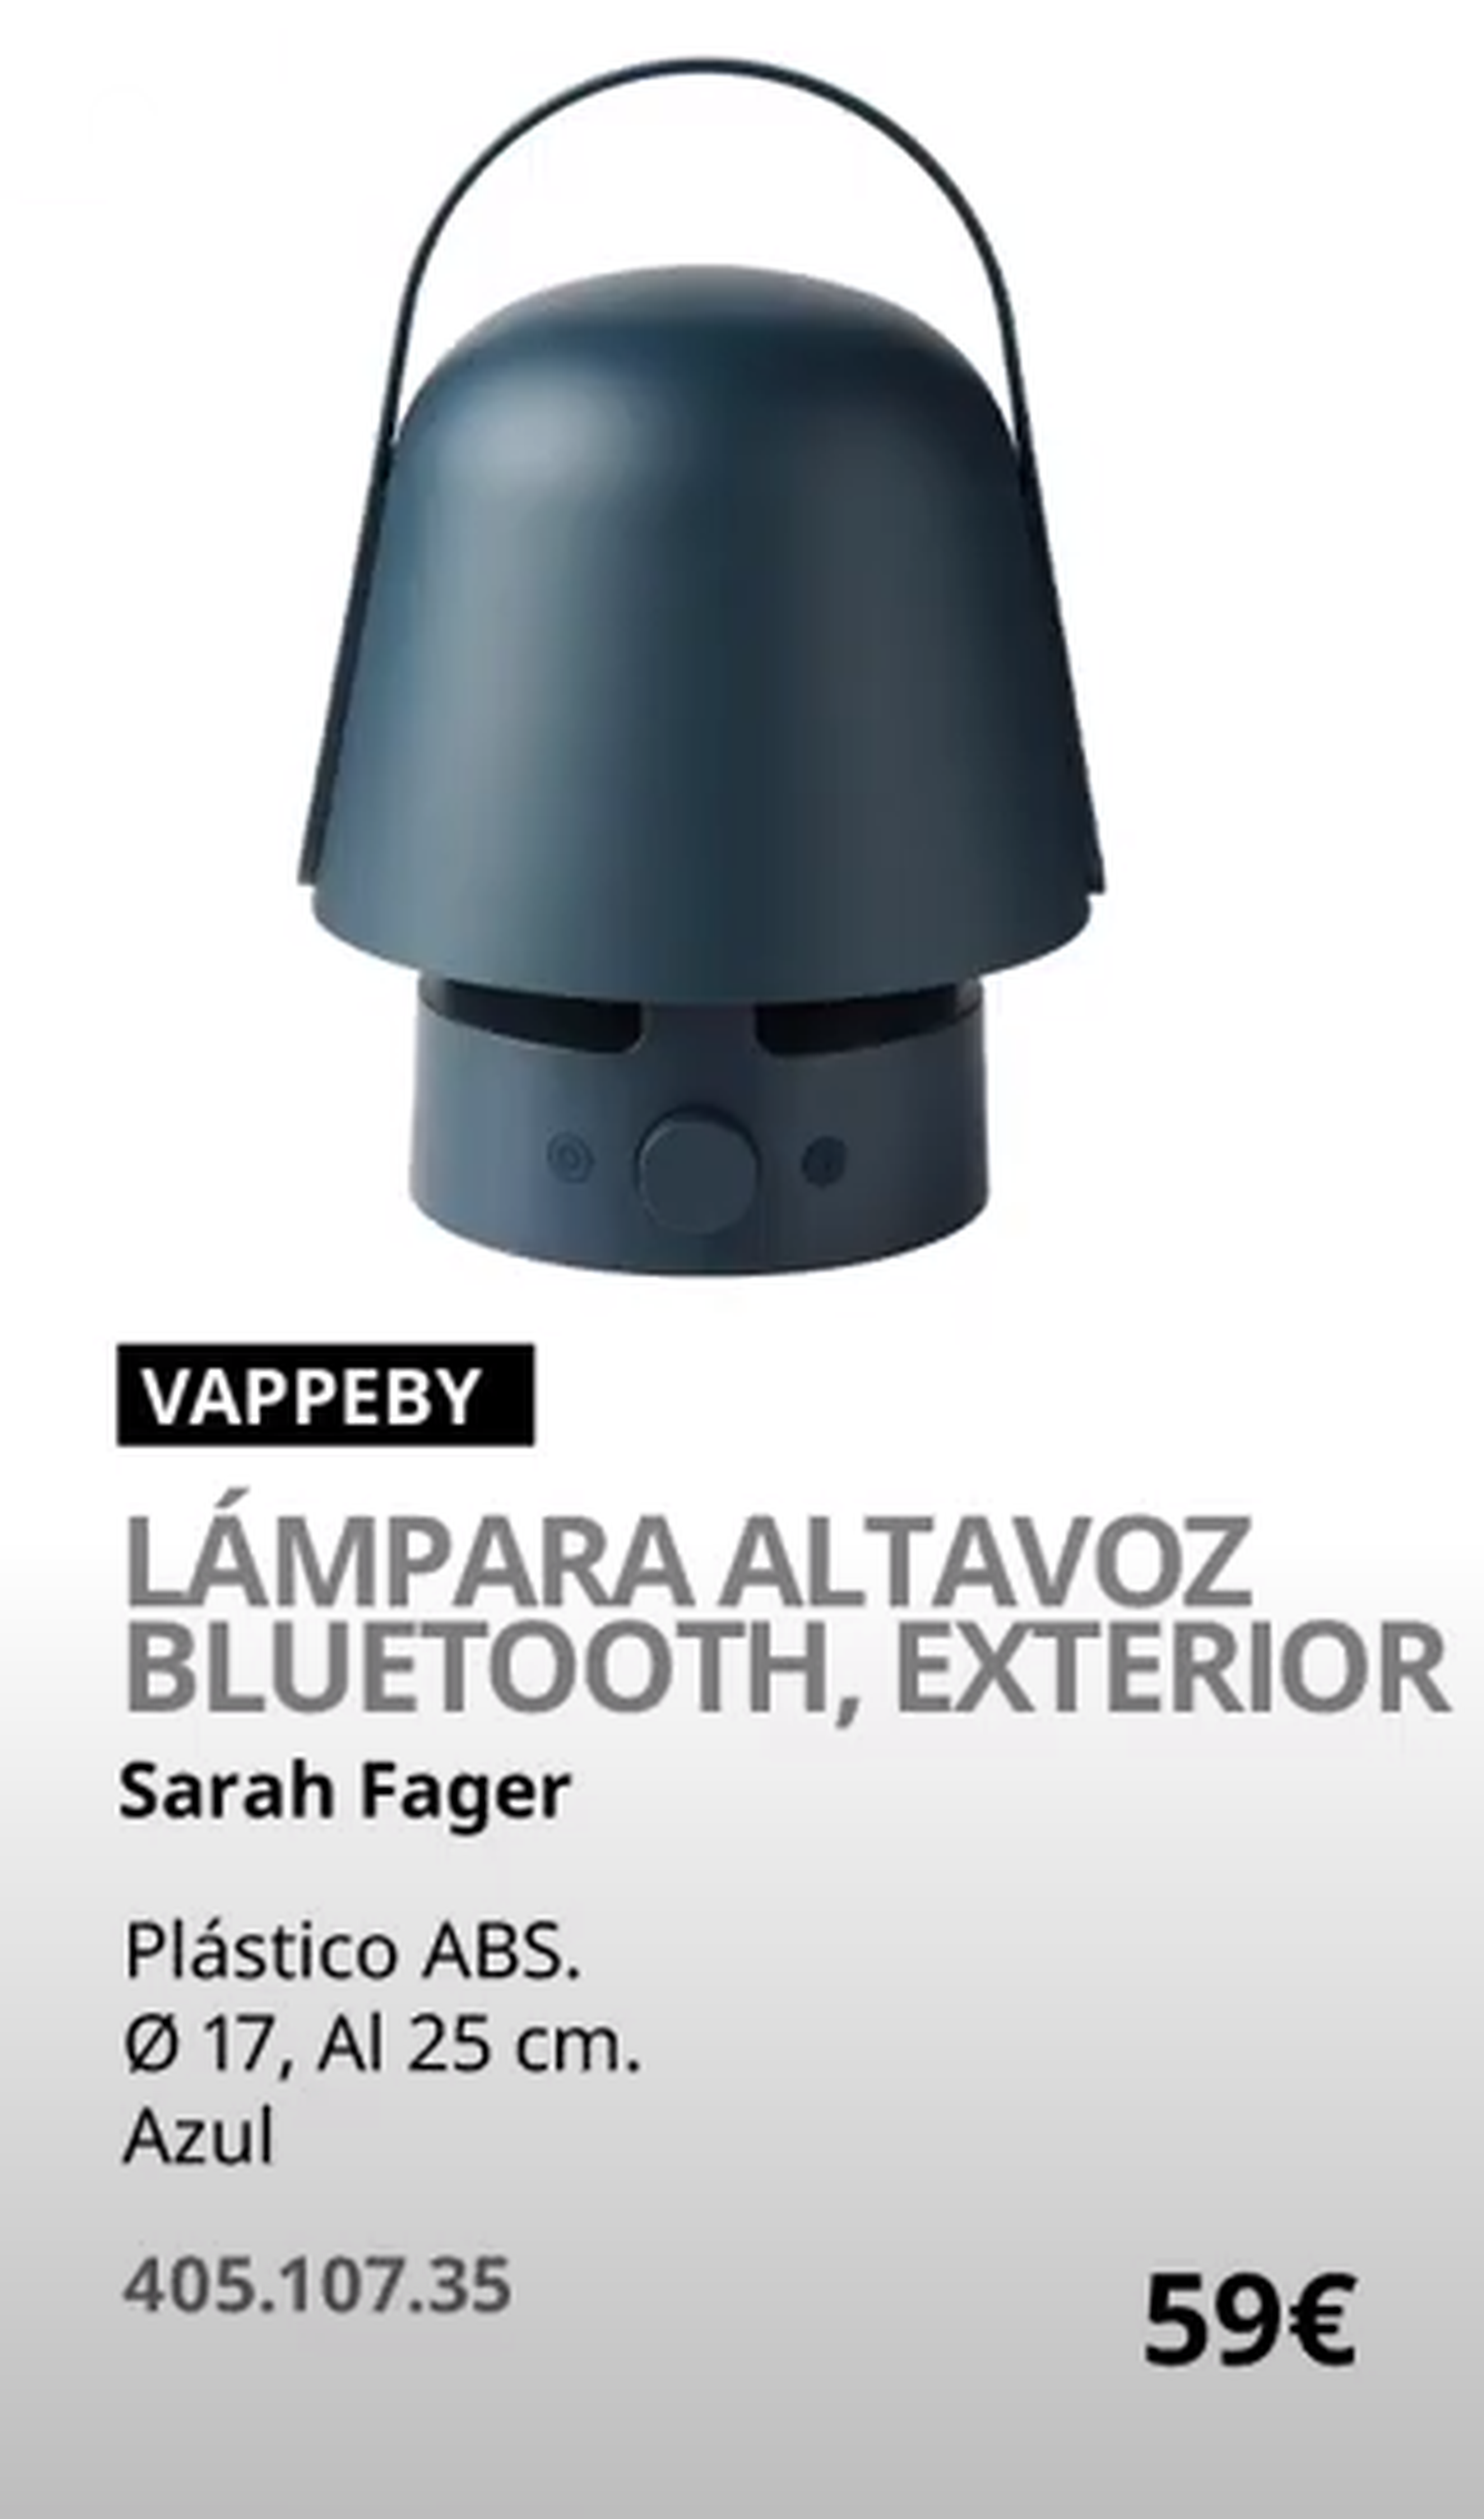 Características y precio de la lámpara altavoz VAPPEBY de Ikea.